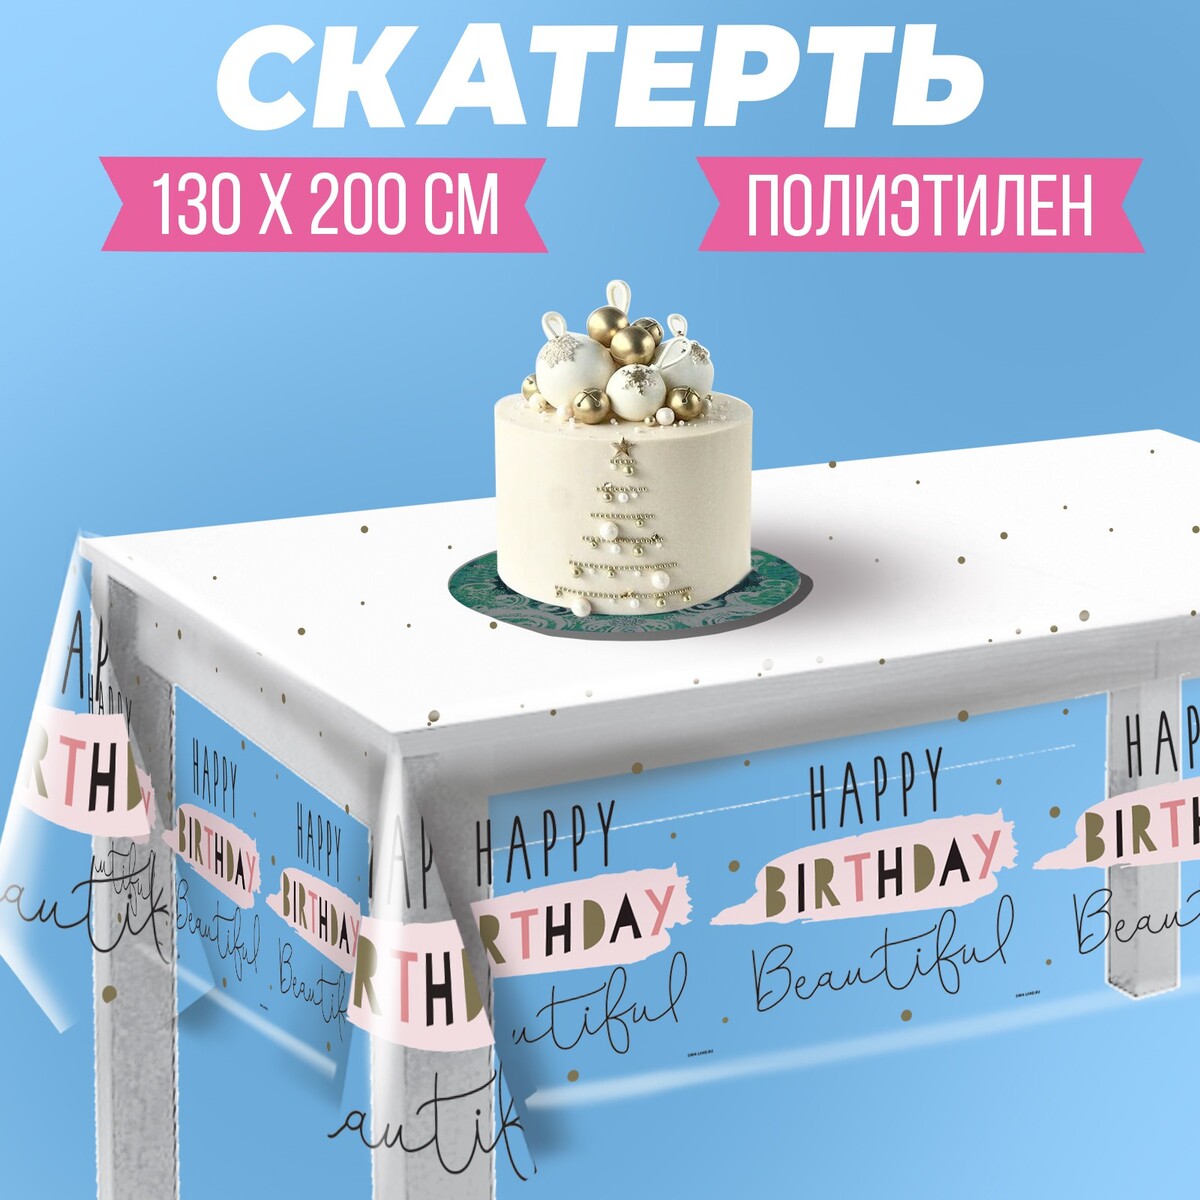 Скатерть happy birthday, 130 × 200 см